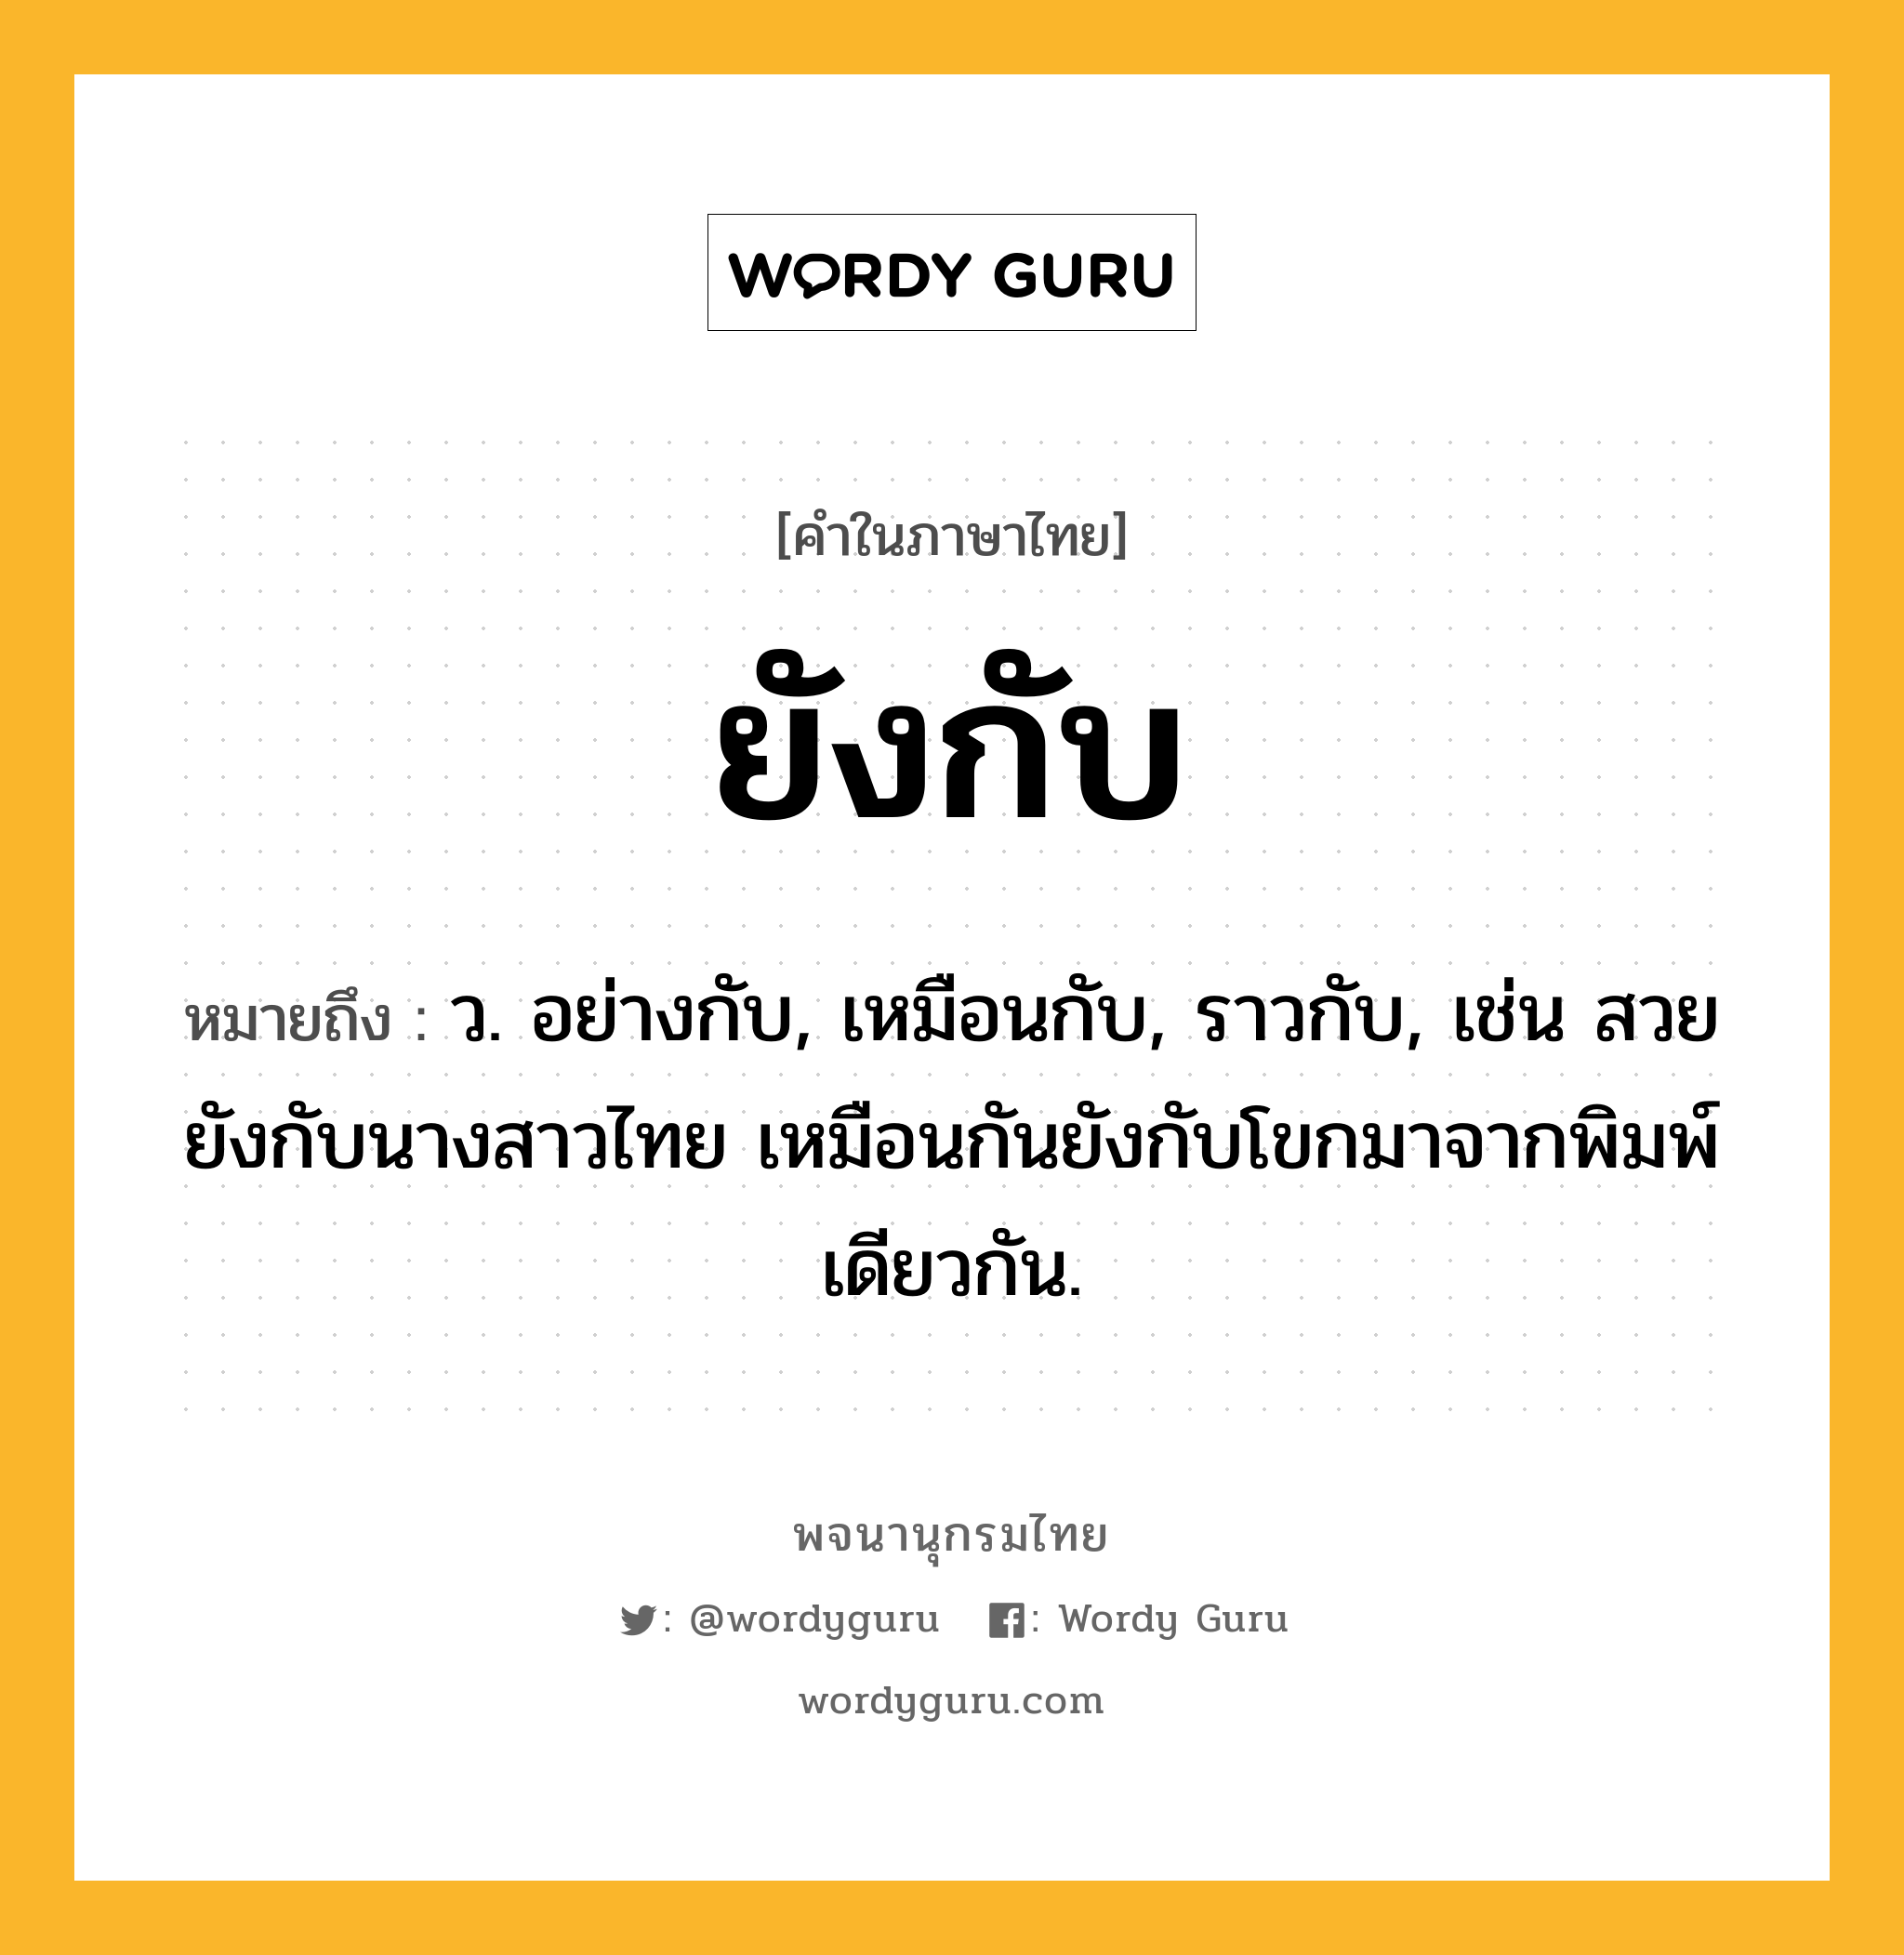 ยังกับ ความหมาย หมายถึงอะไร?, คำในภาษาไทย ยังกับ หมายถึง ว. อย่างกับ, เหมือนกับ, ราวกับ, เช่น สวยยังกับนางสาวไทย เหมือนกันยังกับโขกมาจากพิมพ์เดียวกัน.